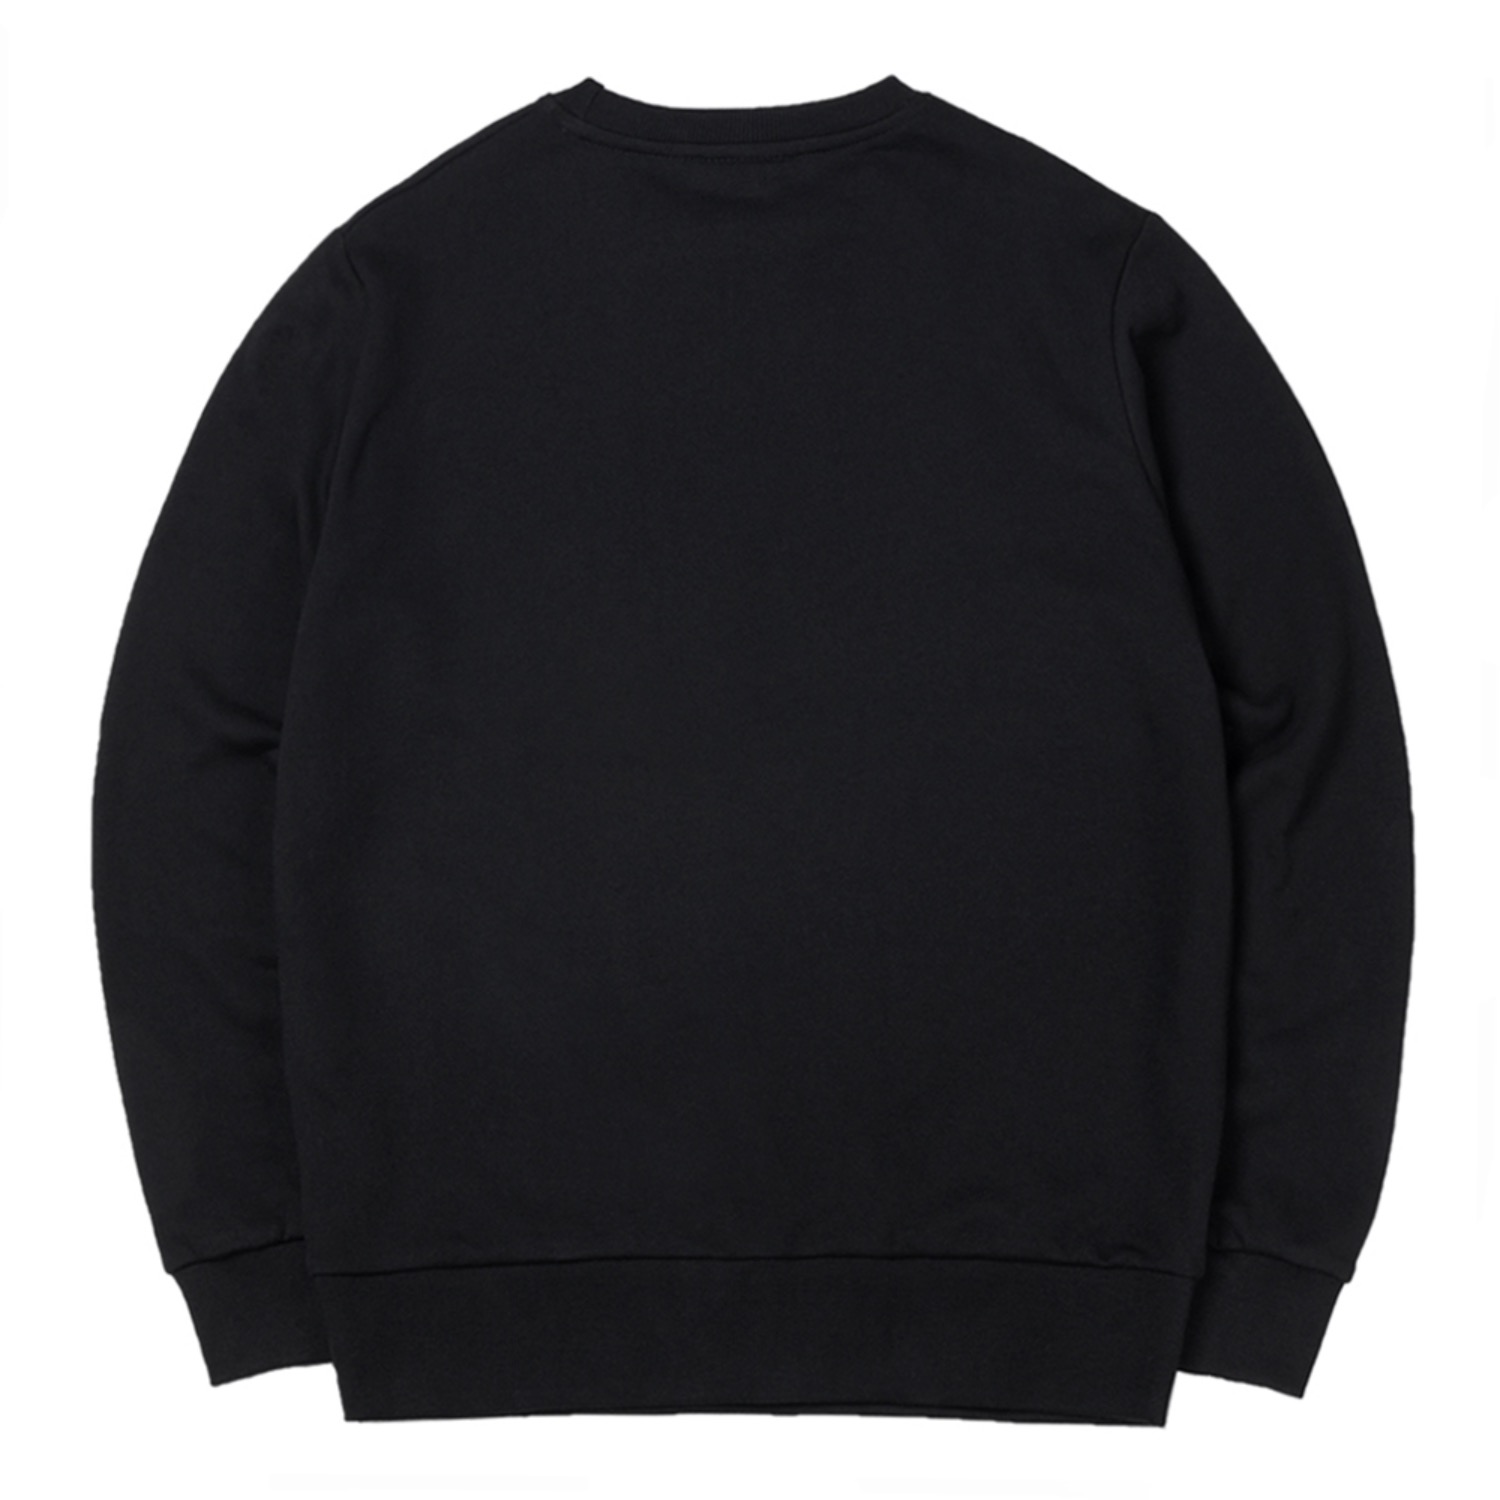 스마일 맨투맨 Smile sweatshirt (Black)